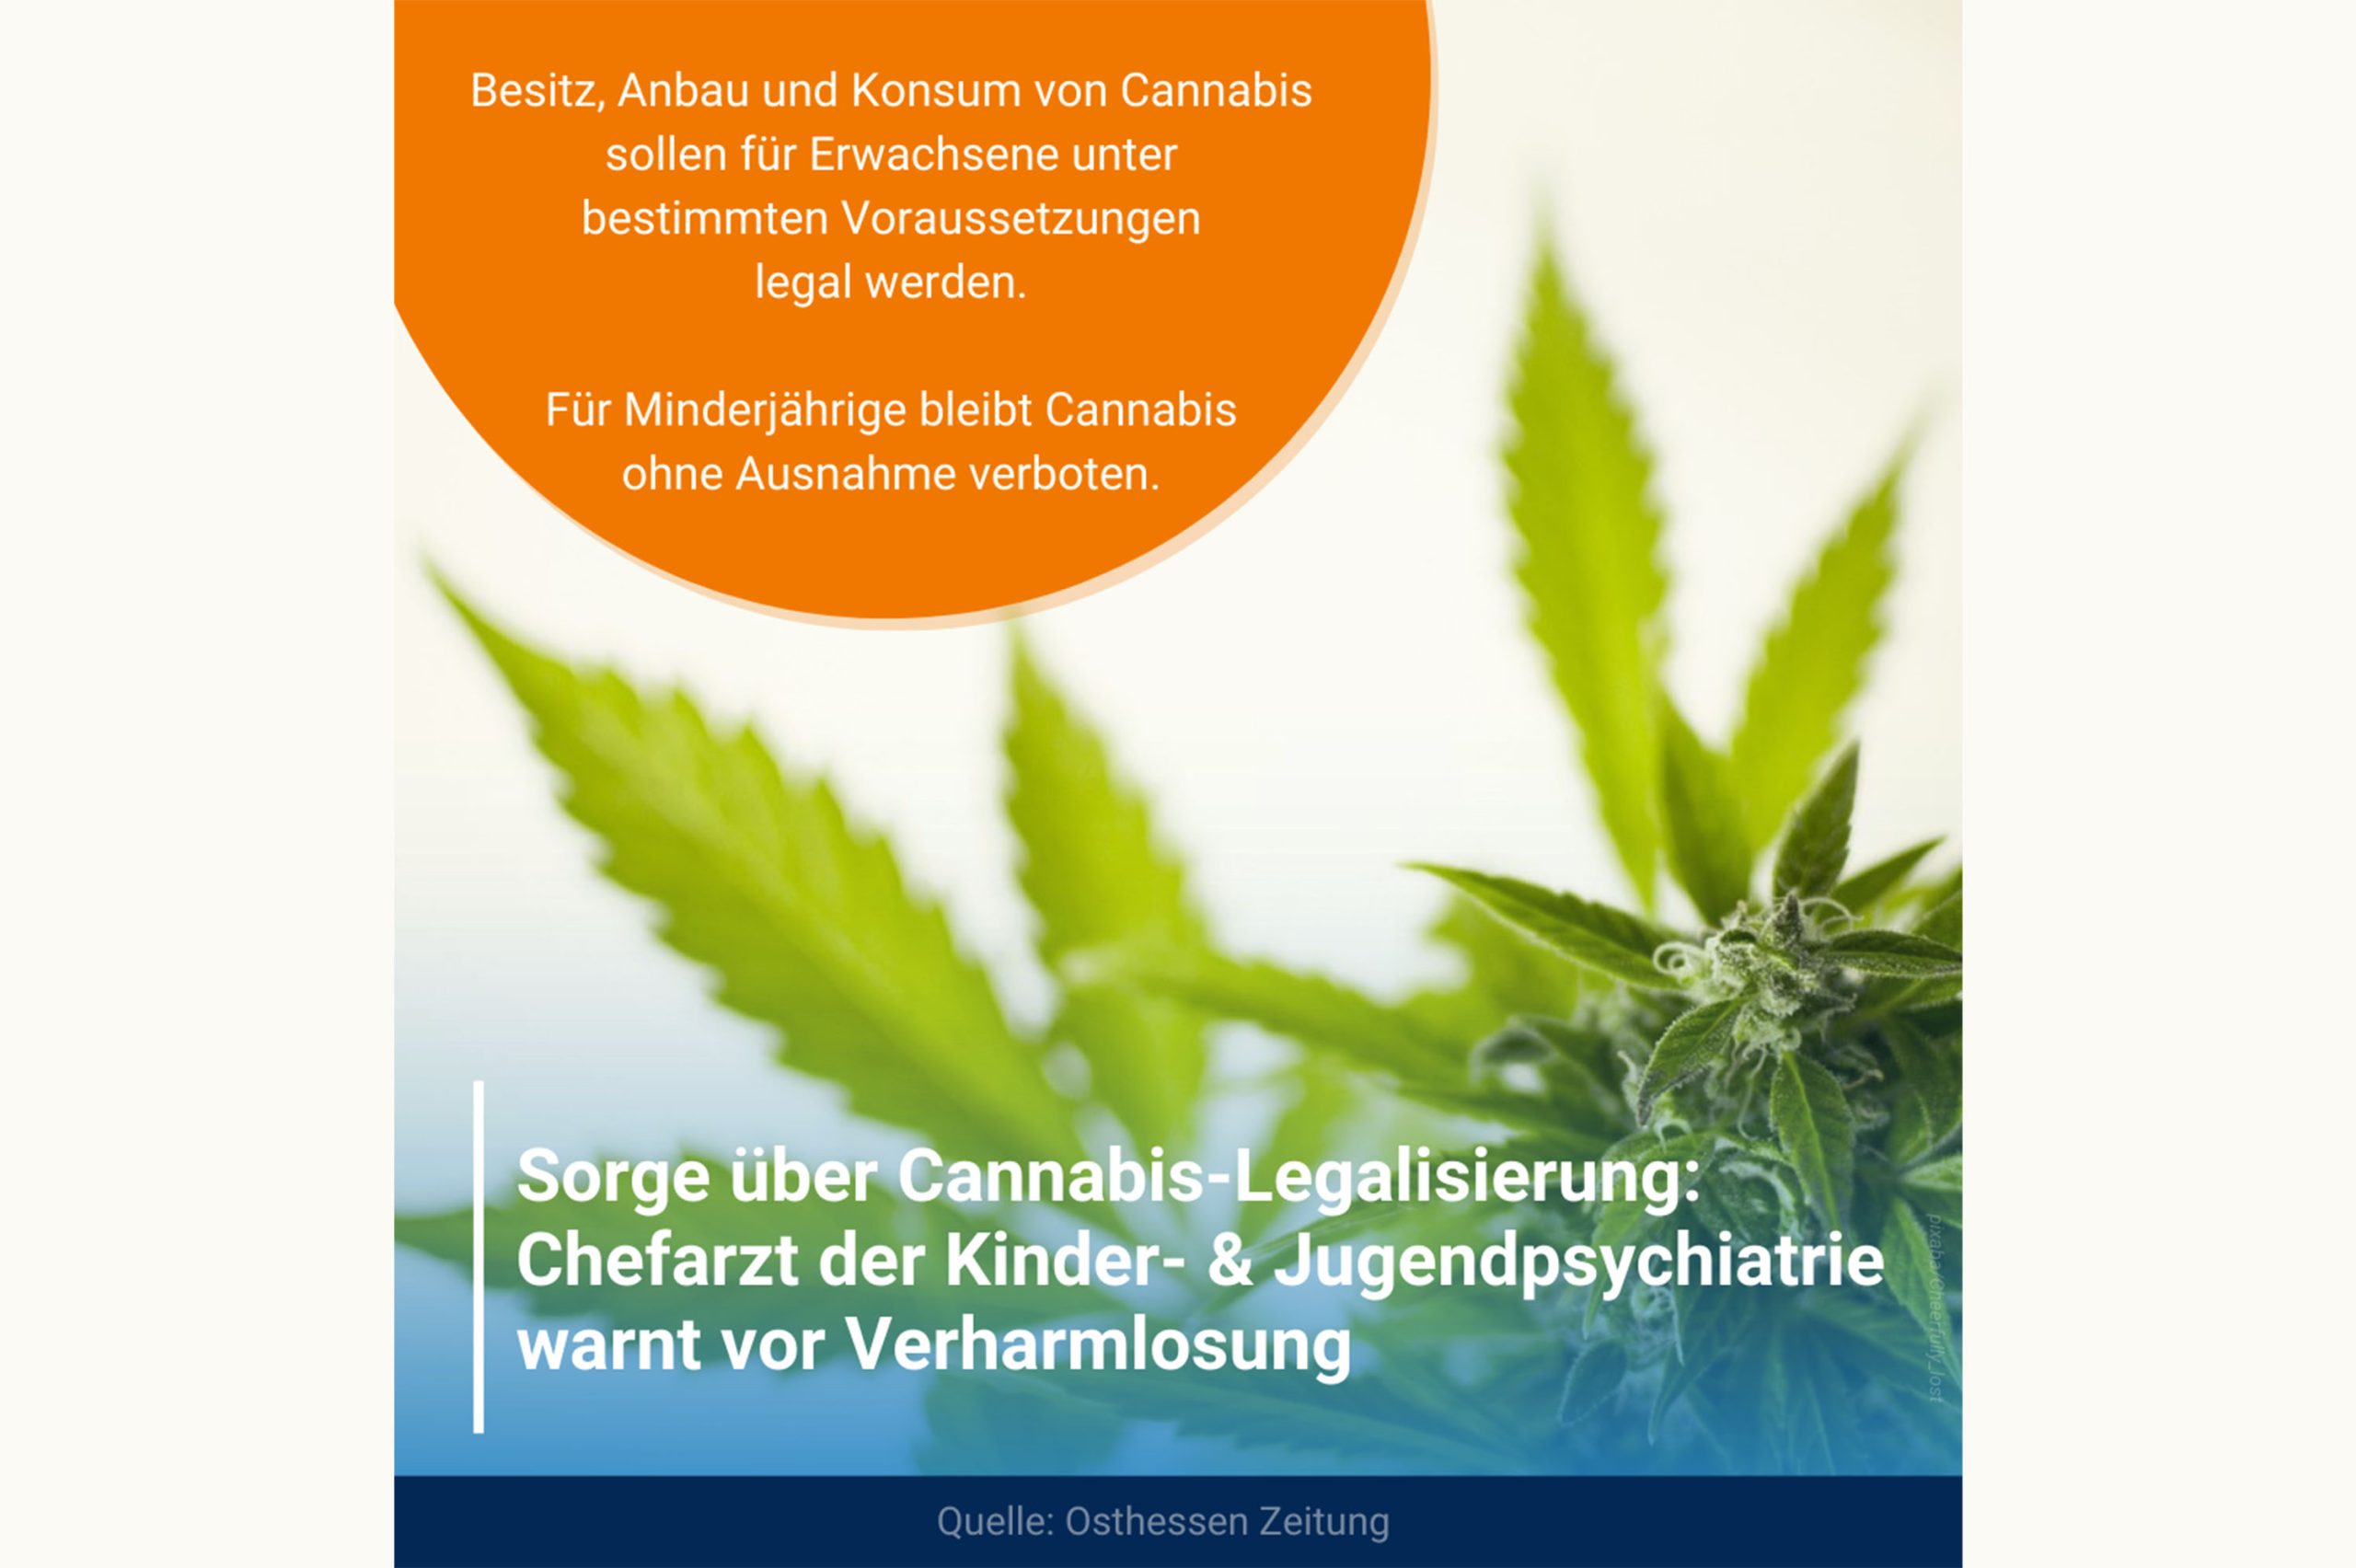 Osthessen Zeitung: Sorge über Cannabis-Legalisierung: Chefarzt warnt vor Verharmlosung